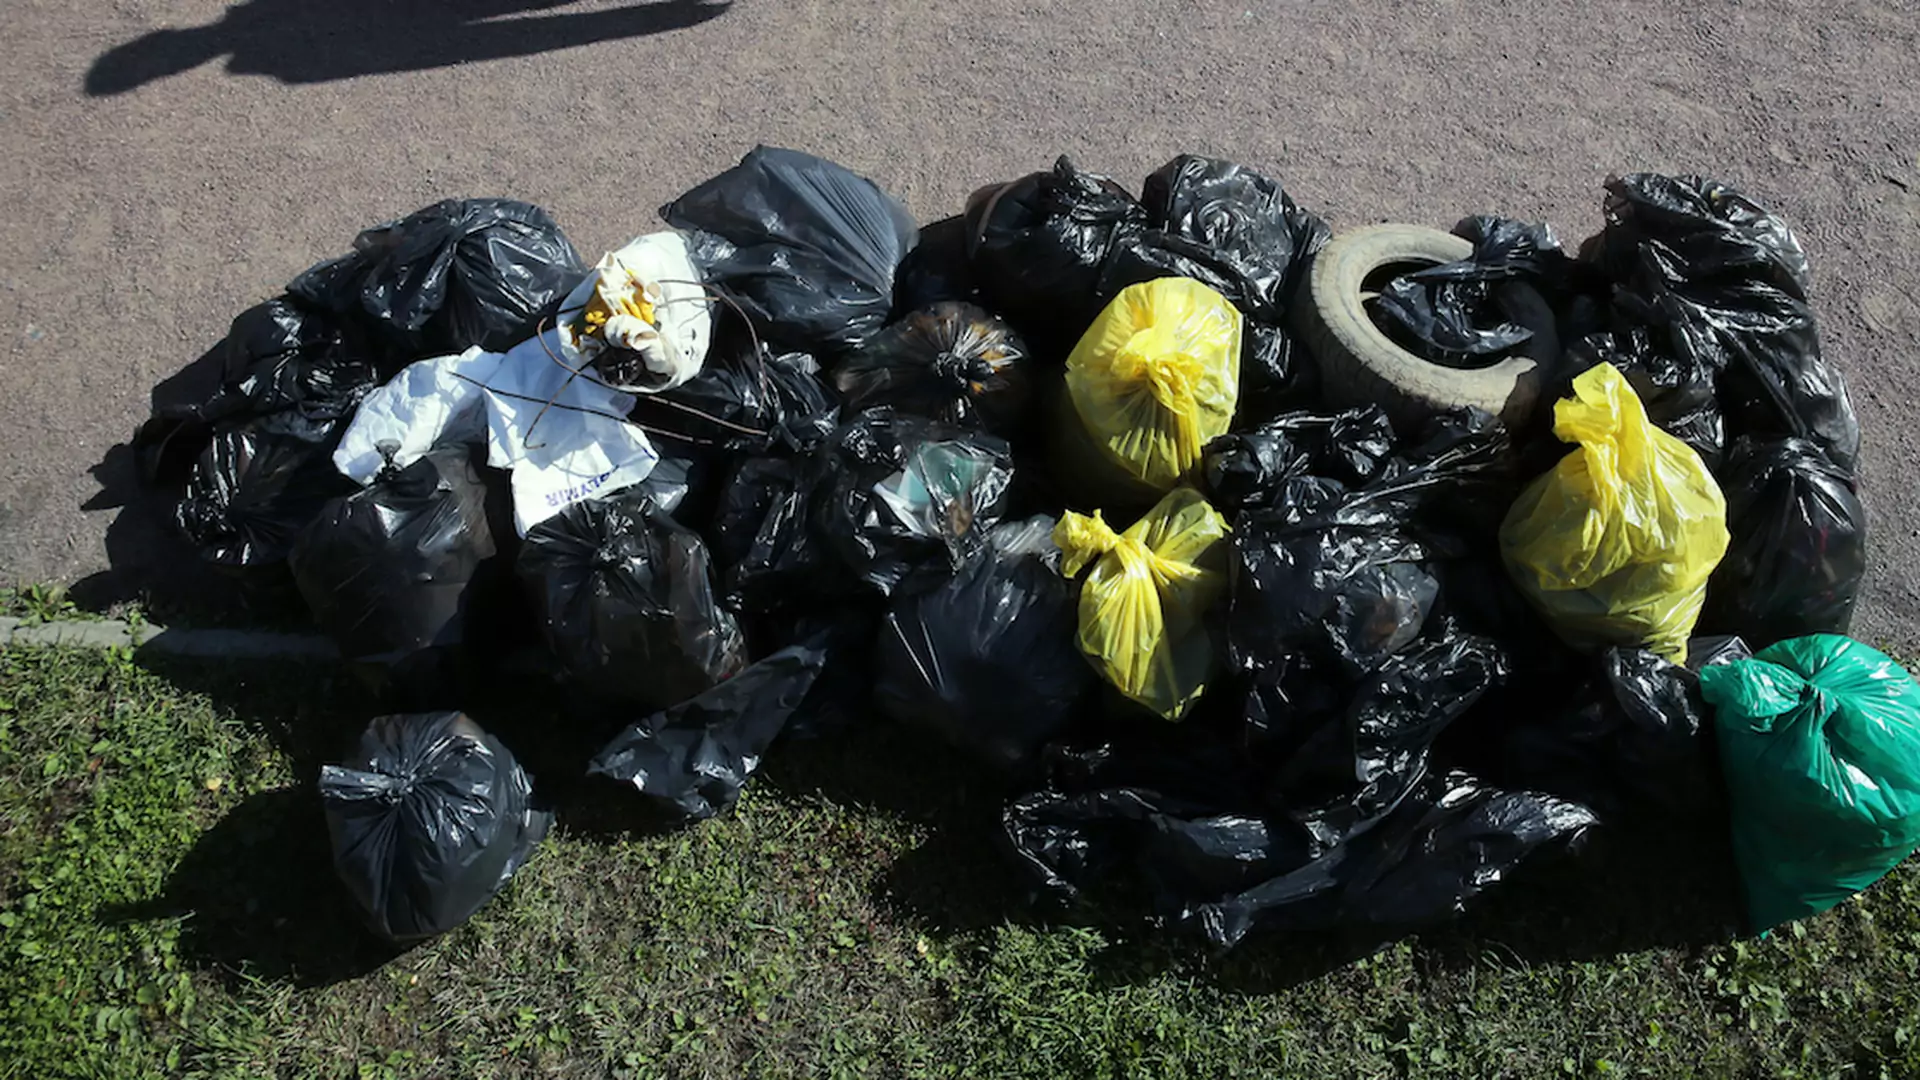 Polscy urzędnicy nie chcieli odebrać śmieci sprzątniętych przez ochotników